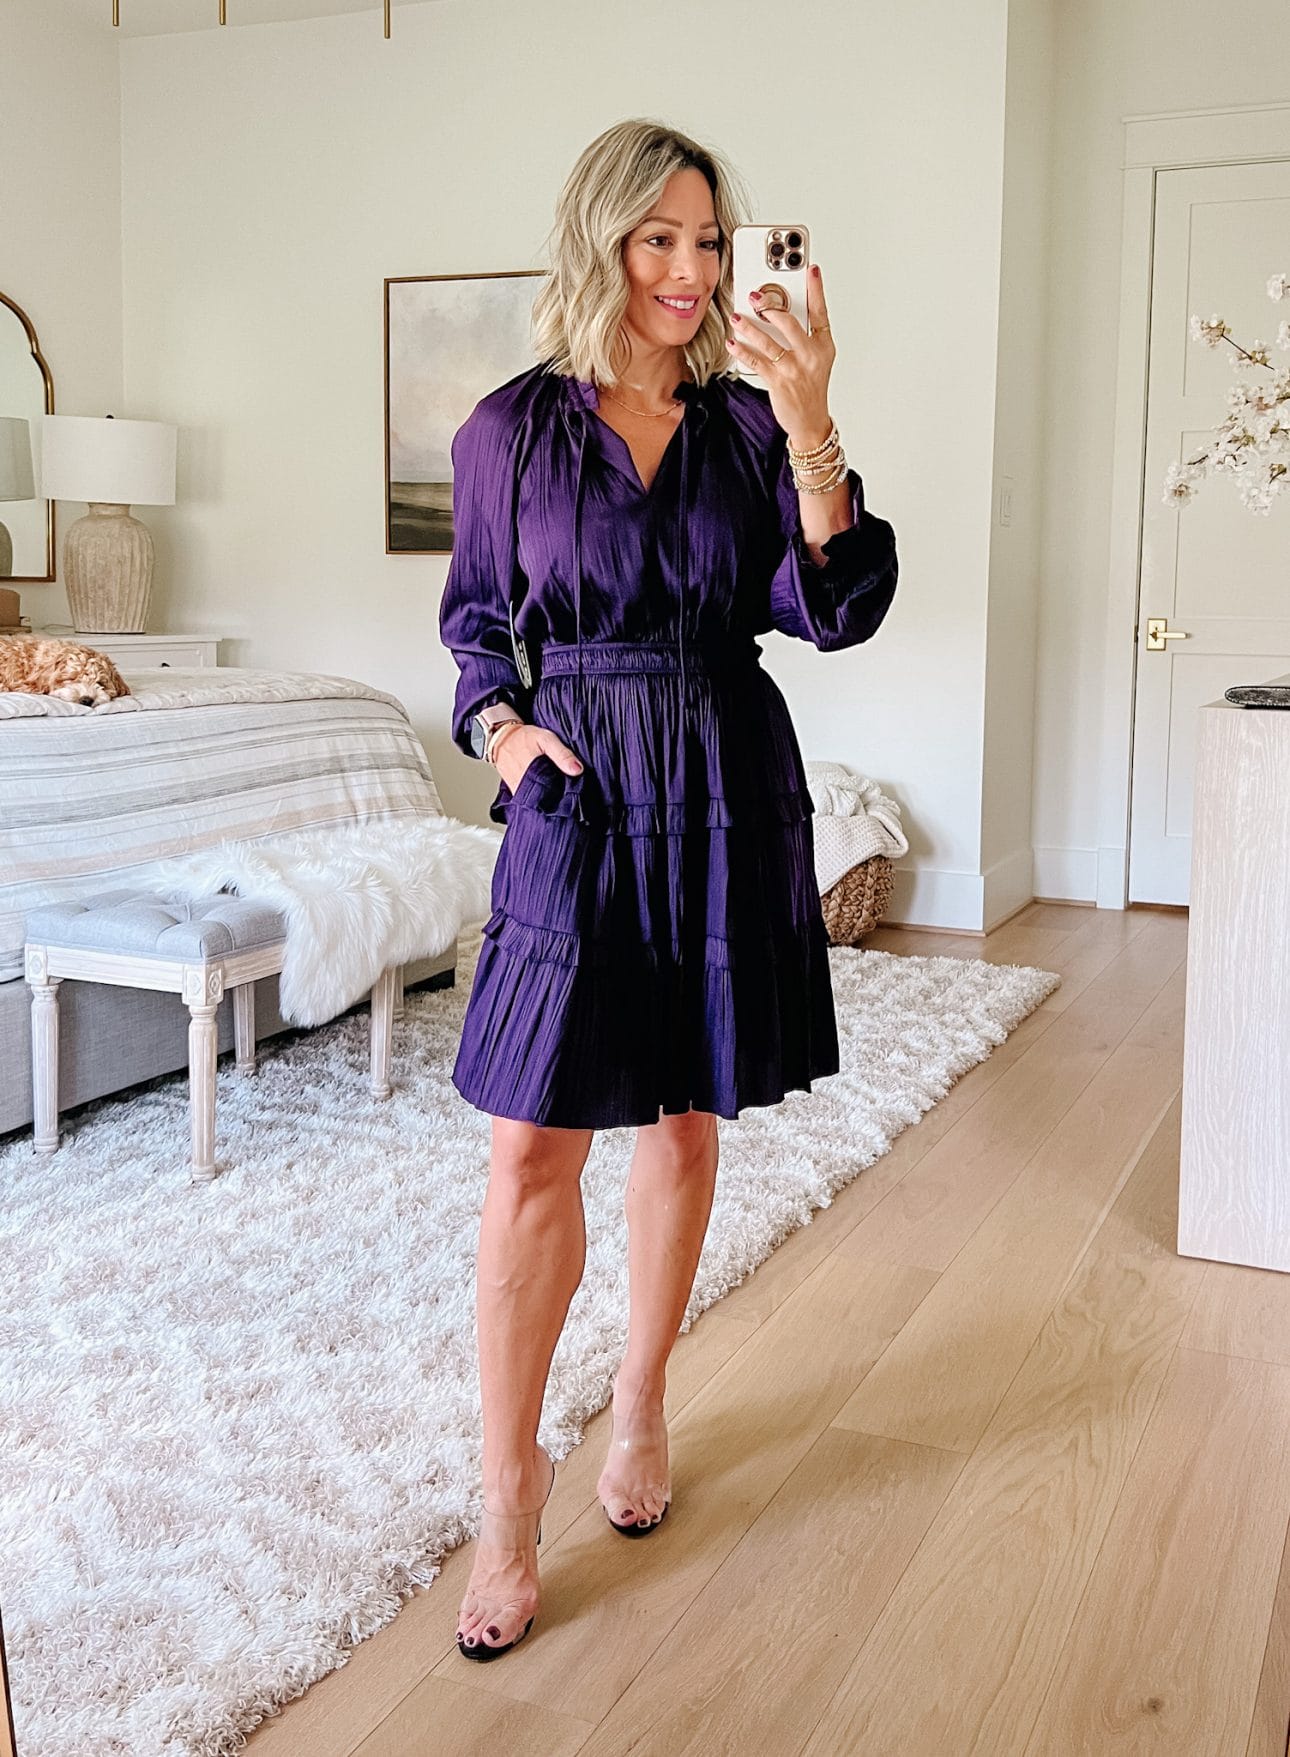 Purple mini Dress, Heels 